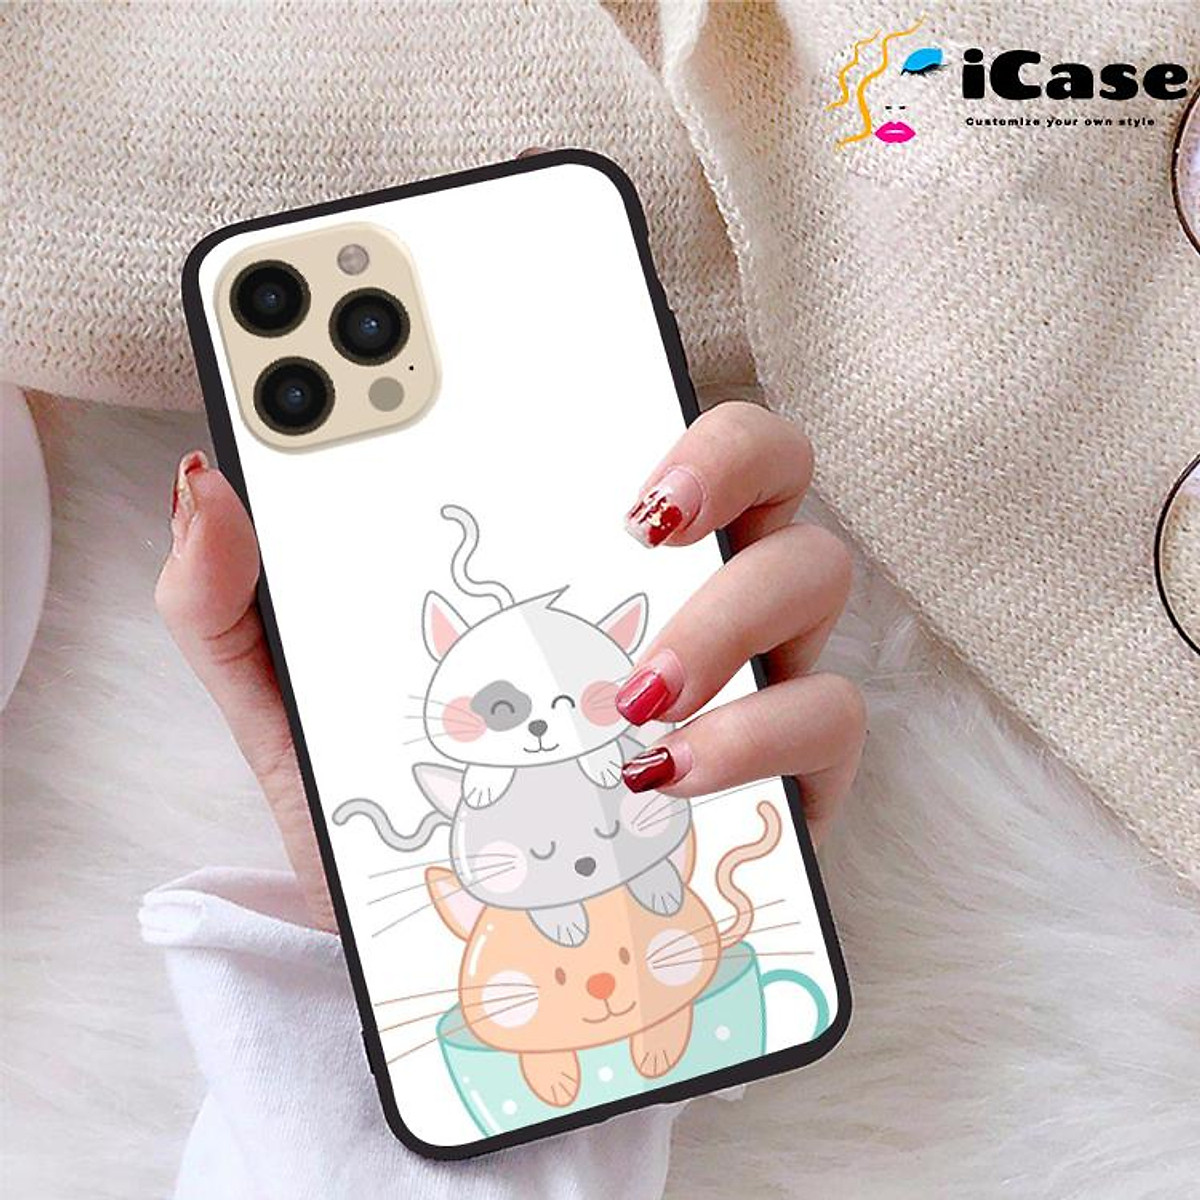 Bảo vệ và phong cách trong một sản phẩm - ốp lưng iCase iPhone 12 Pro Max sẽ làm bạn hài lòng với thiết kế độc đáo, đa dạng và chất lượng hàng đầu. Tại sao không xem ngay hình ảnh liên quan để tìm kiếm sự lựa chọn tốt nhất cho chiếc điện thoại của bạn?